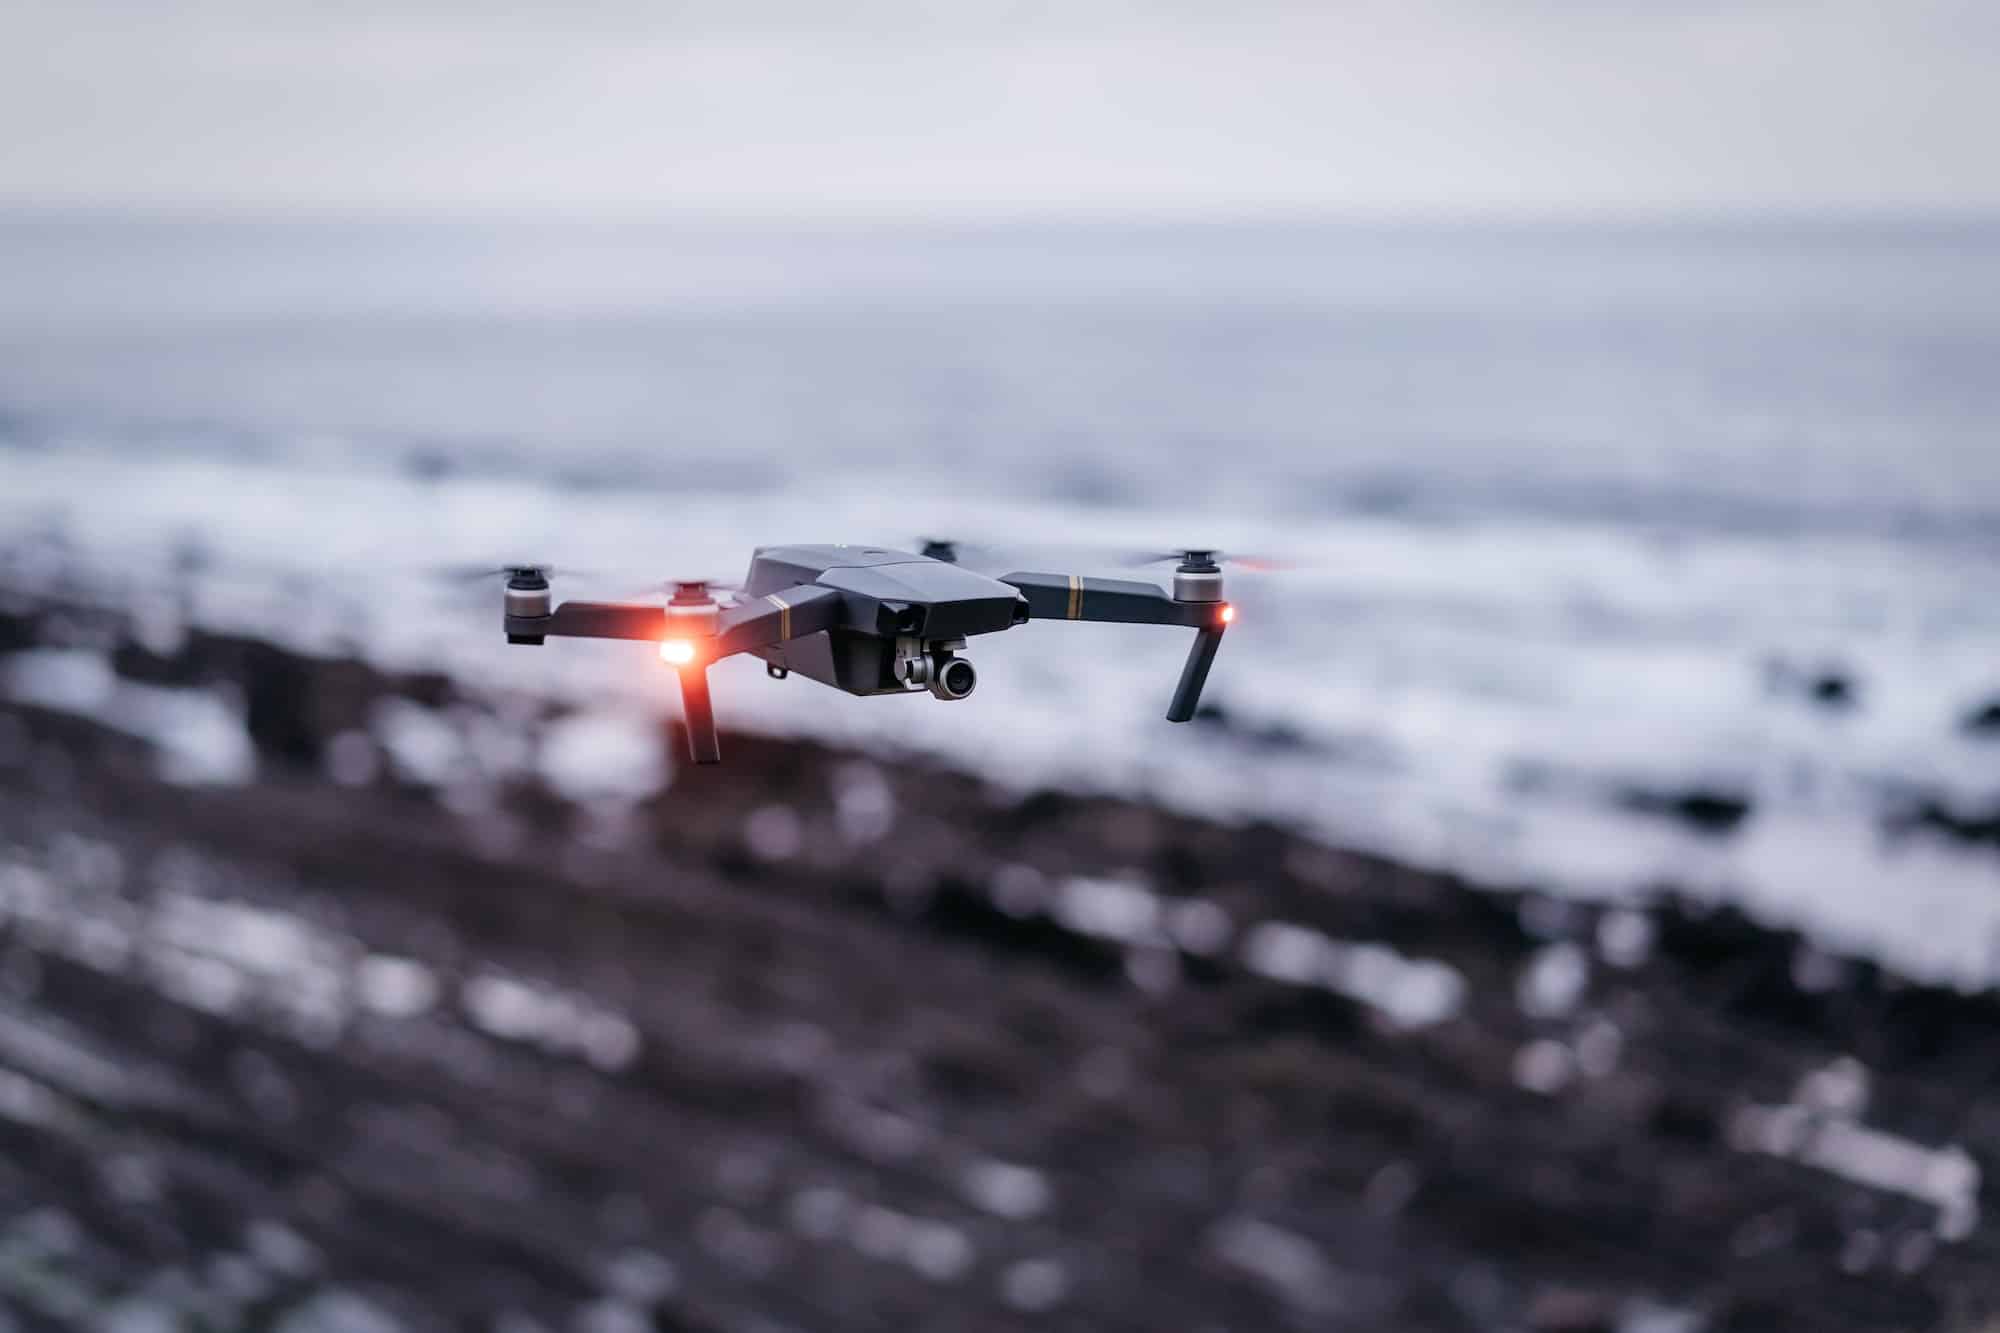 Quels facteurs faut-il considérer lorsque l’on souhaite trouver le meilleur drone abordable ?